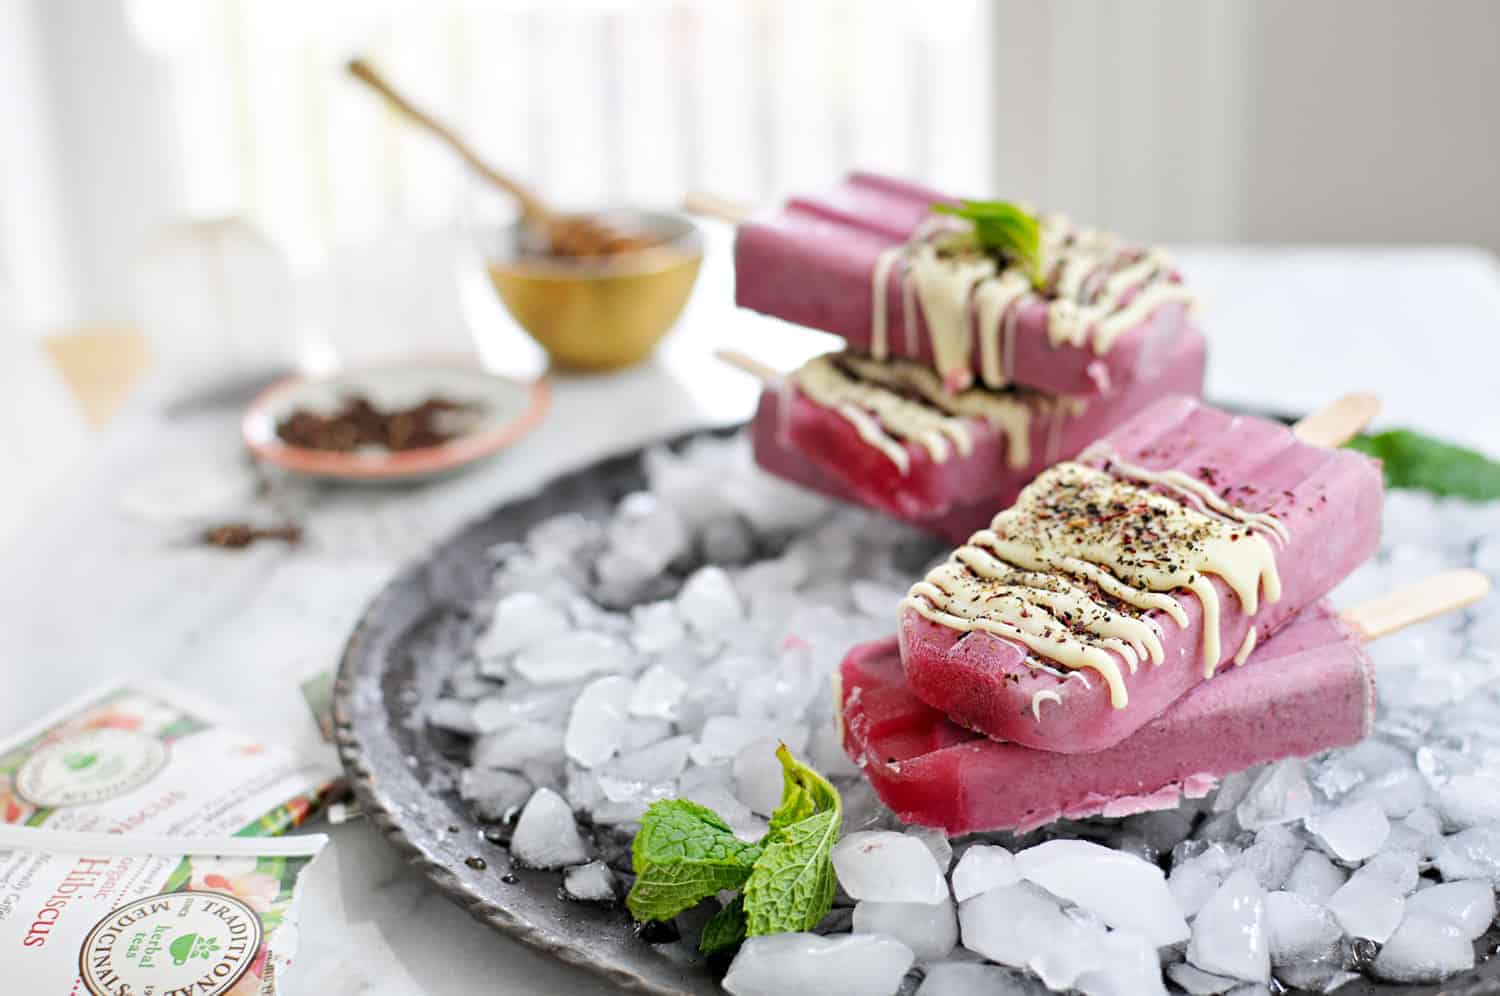 Honey Hibiscus Tea Popsicles recipe (via thepigandquill.com) #icepop #summer #dessert #refinedsugarfree